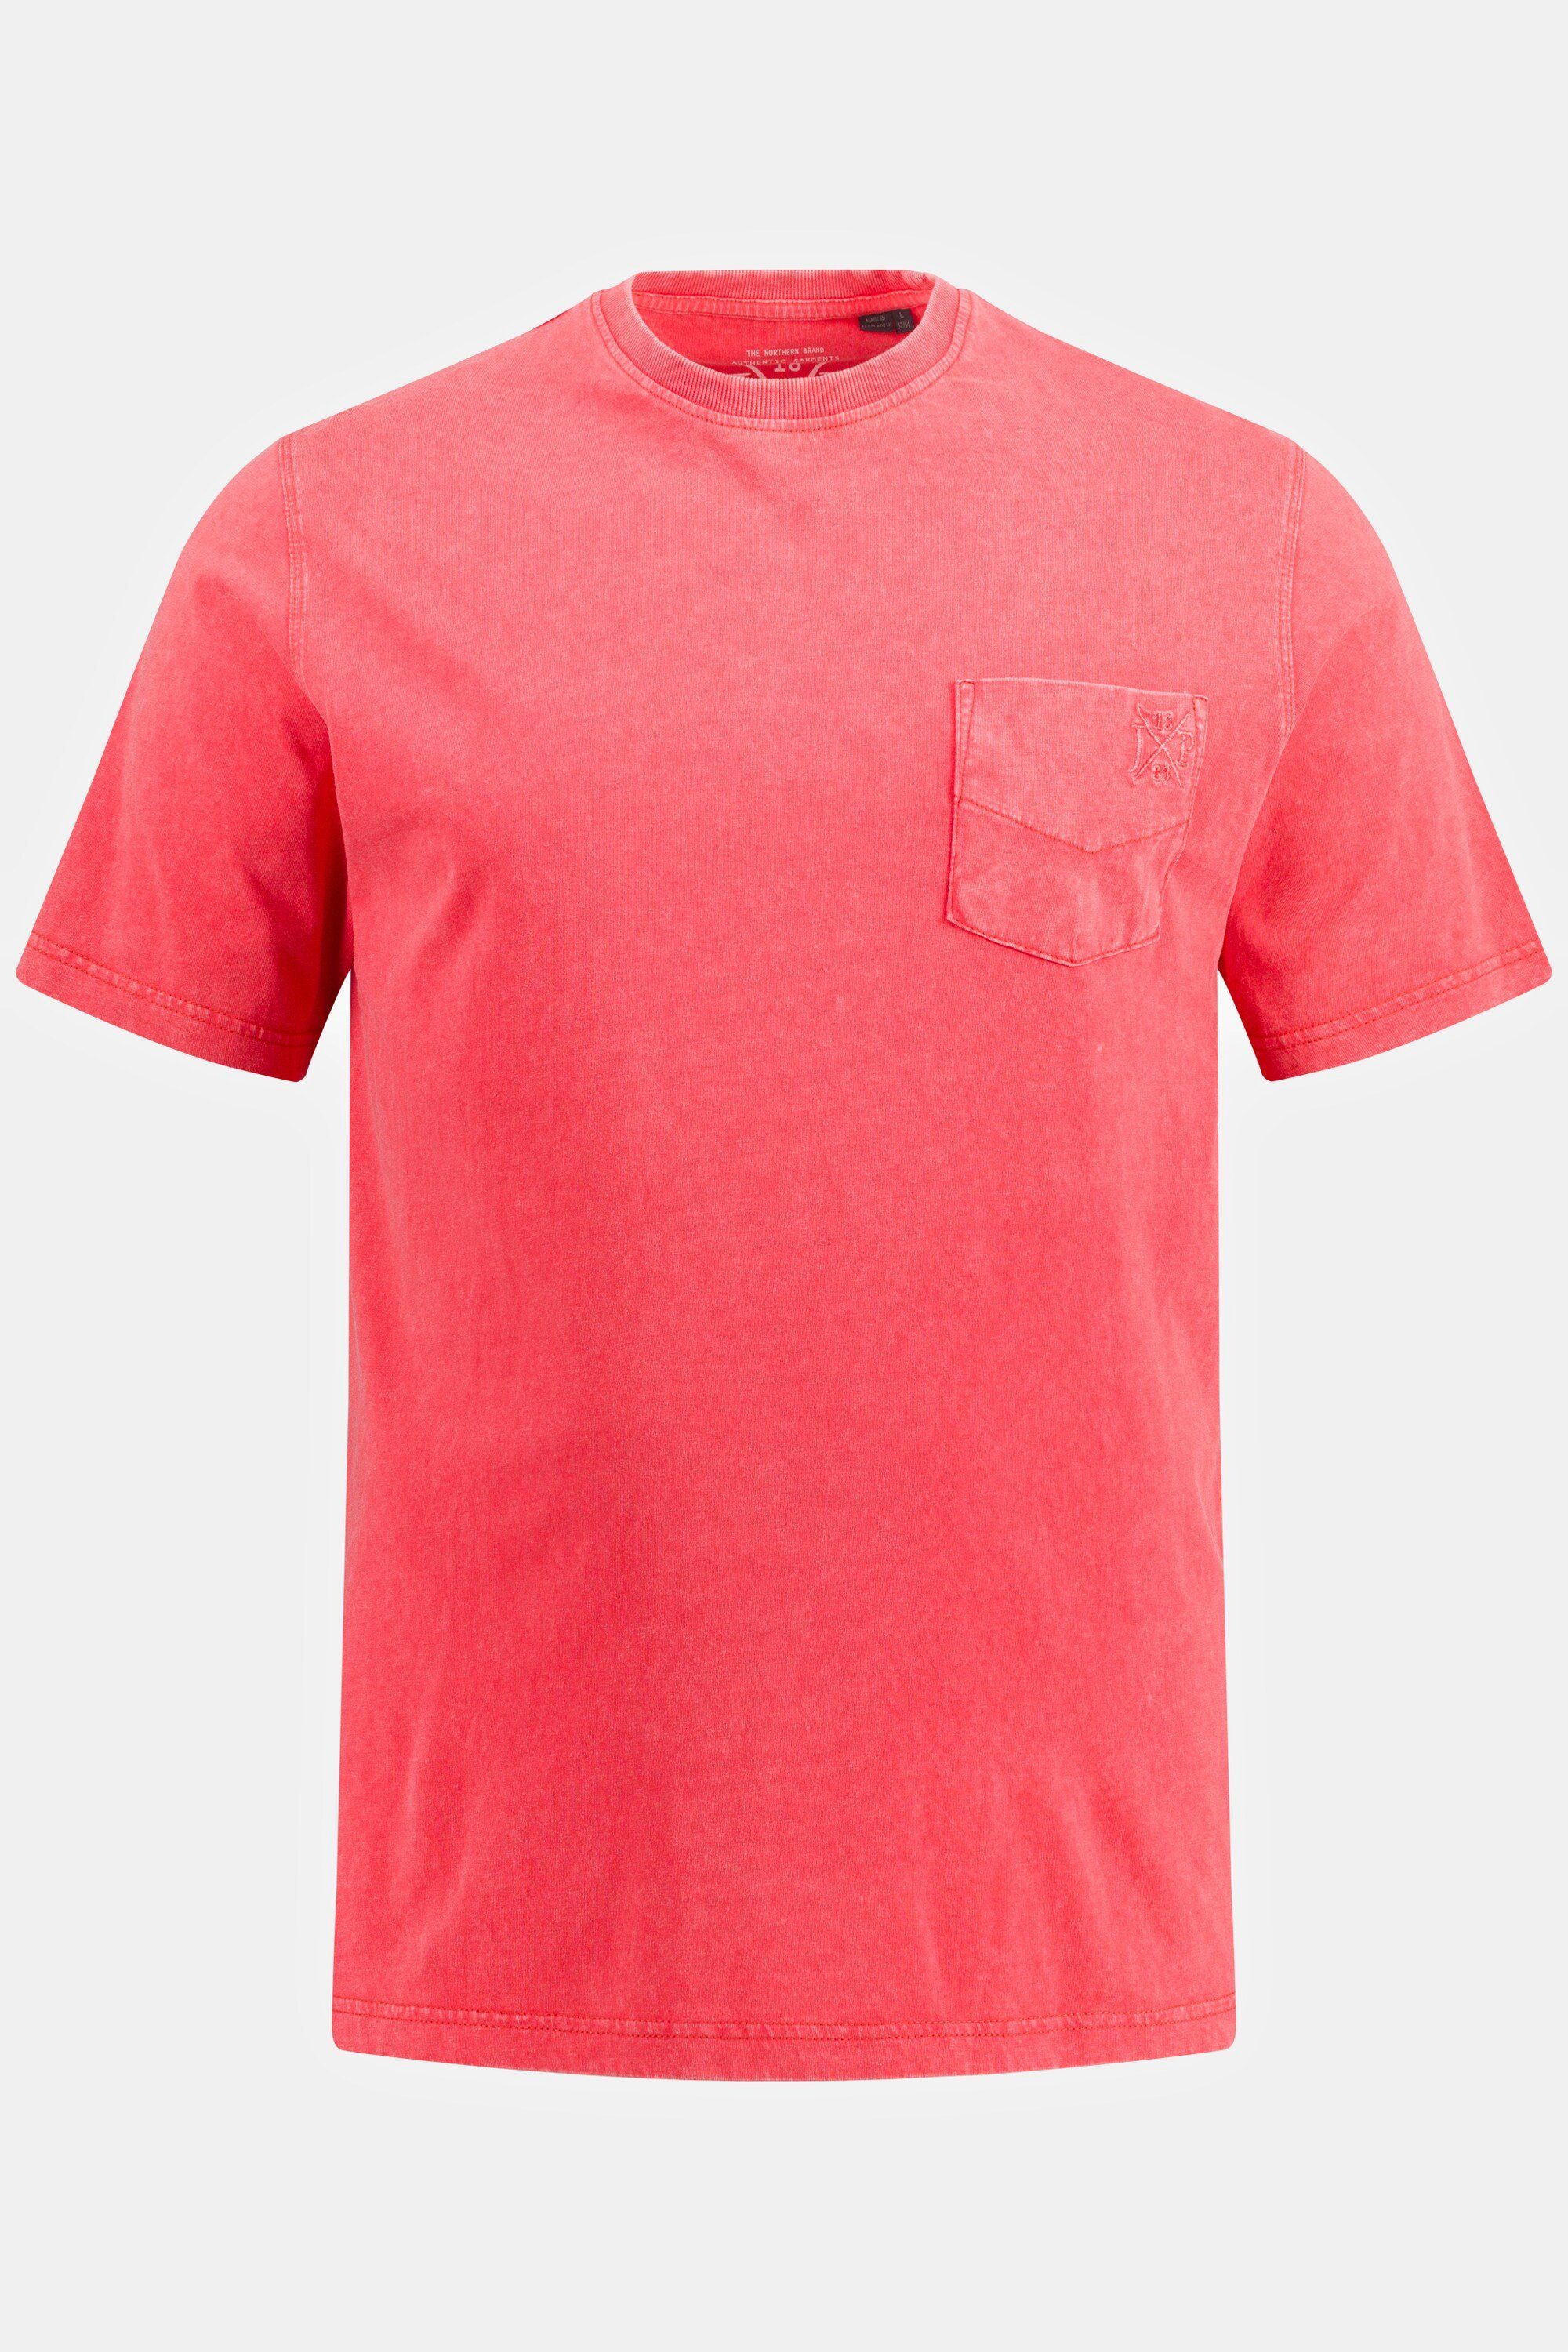 rot JP1880 T-Shirt Rundhals Halbarm Brusttasche T-Shirt